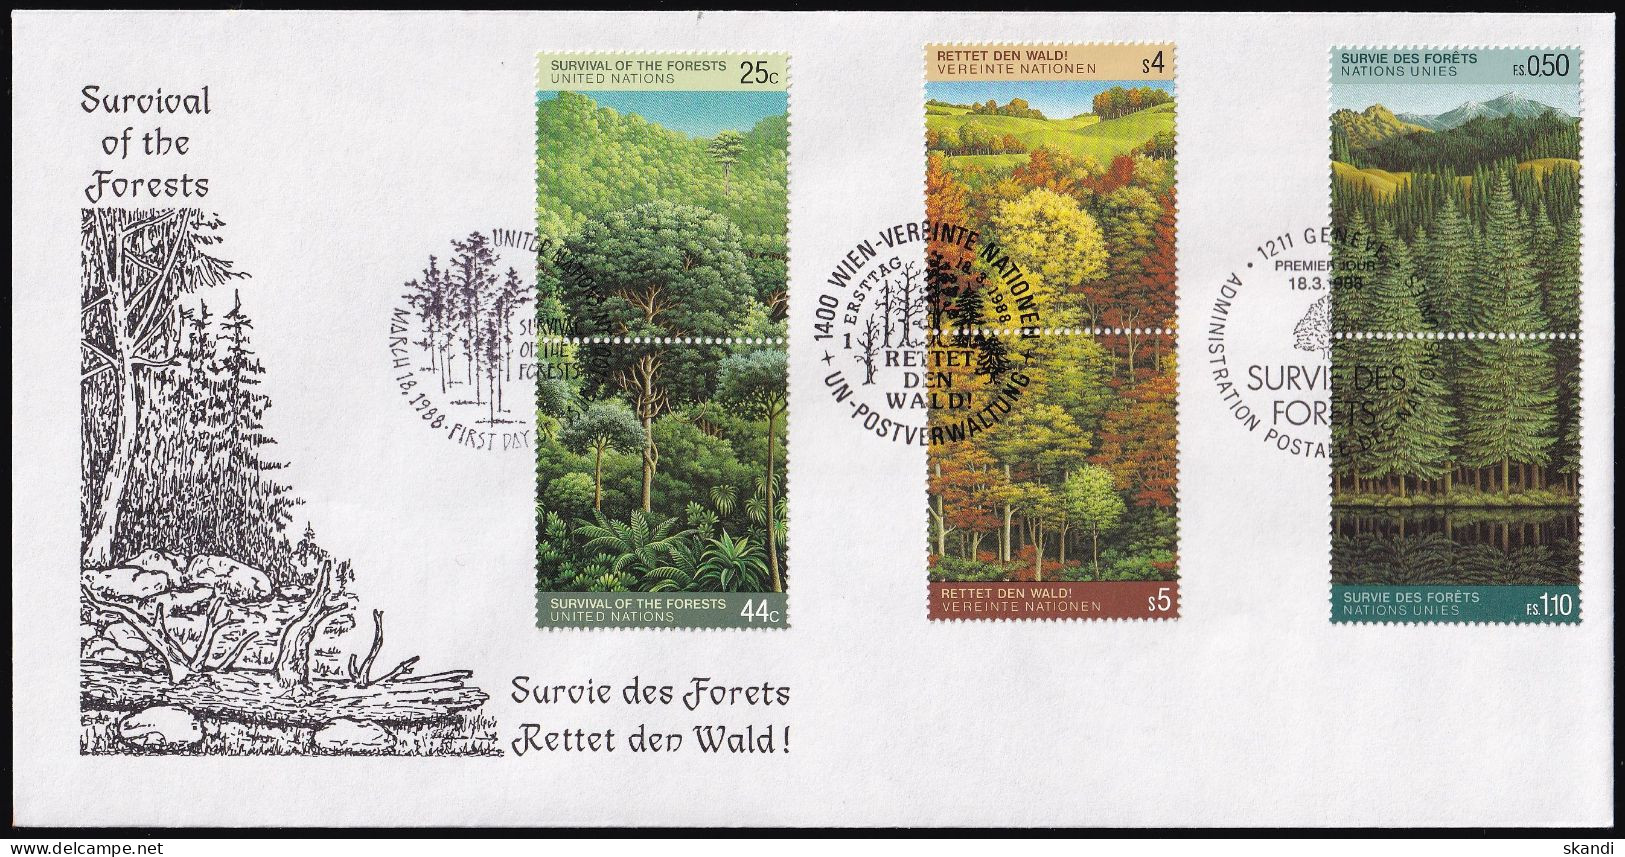 UNO NEW YORK - WIEN - GENF 1988 TRIO-FDC Rettet Den Wald - New York/Geneva/Vienna Joint Issues